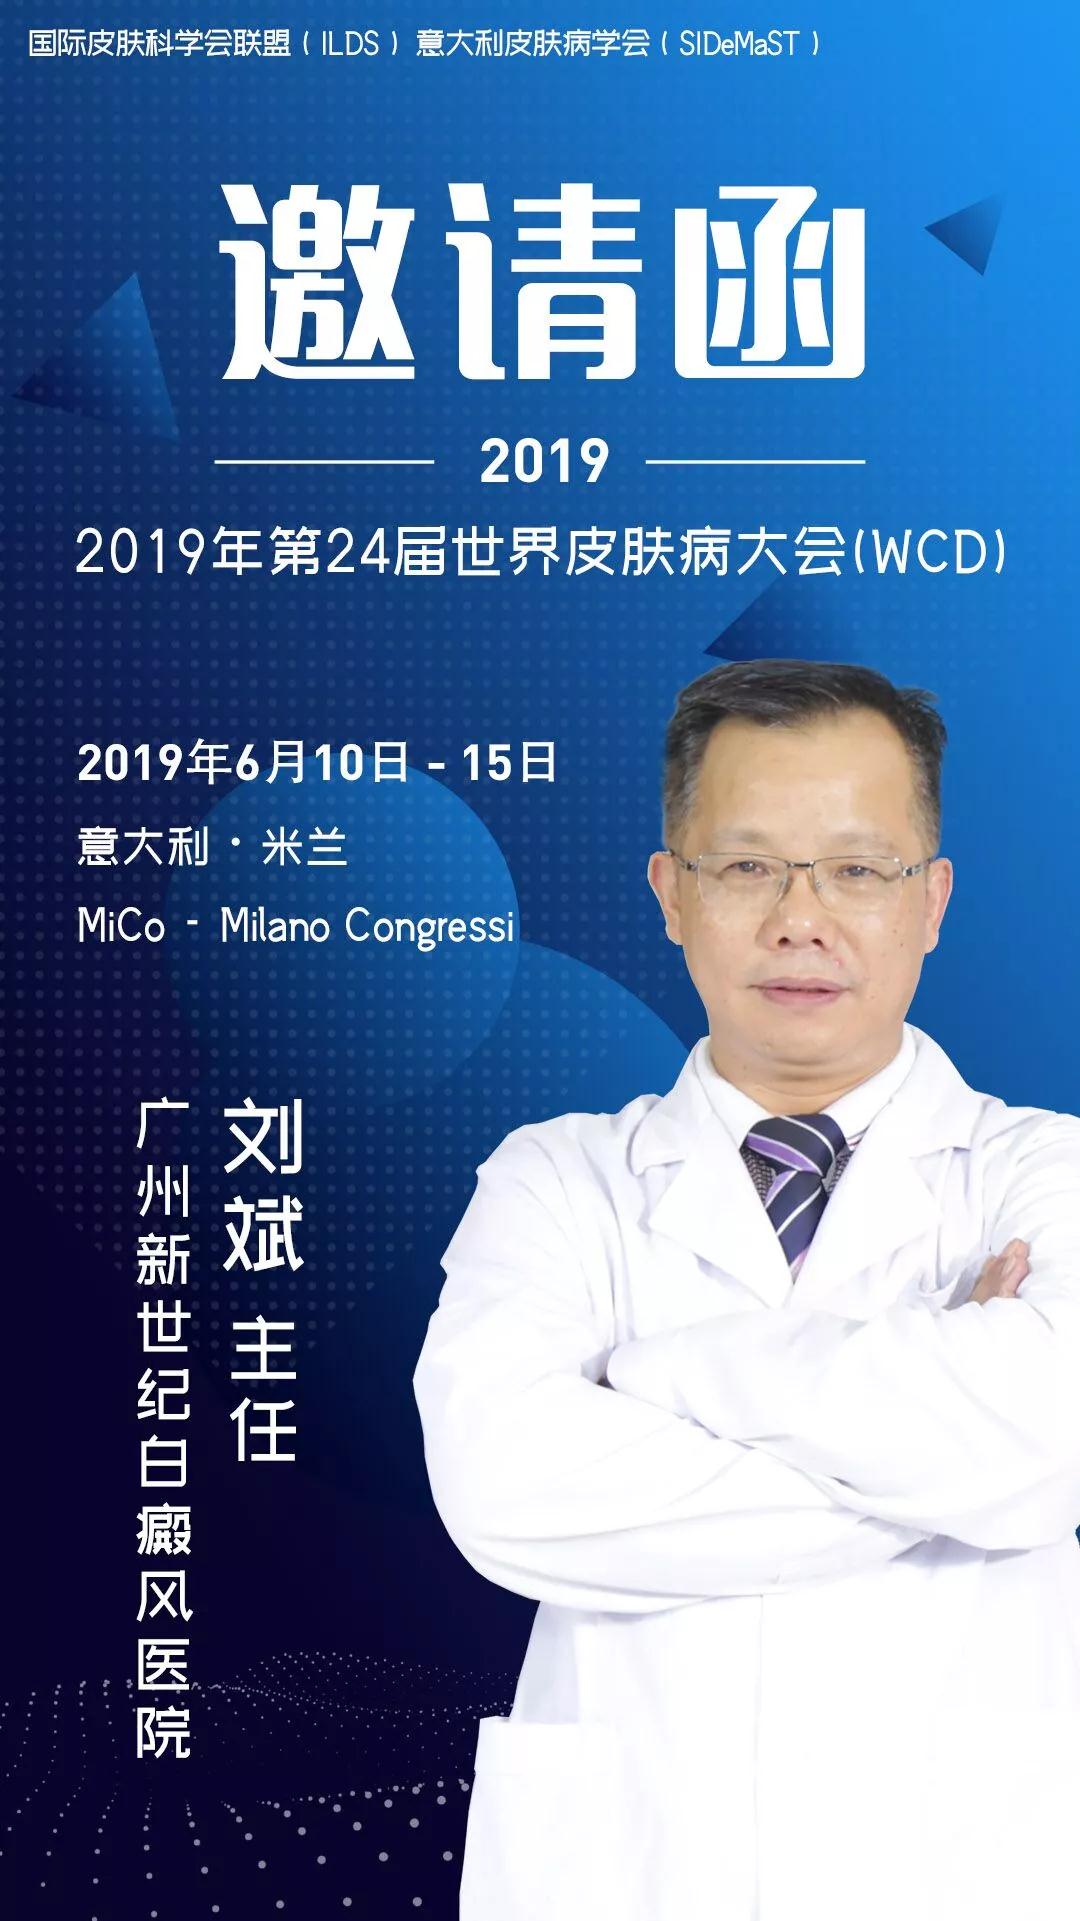 2019年第24届世界皮肤病学大会在意大利召开，广州新世纪医院刘斌出席参加